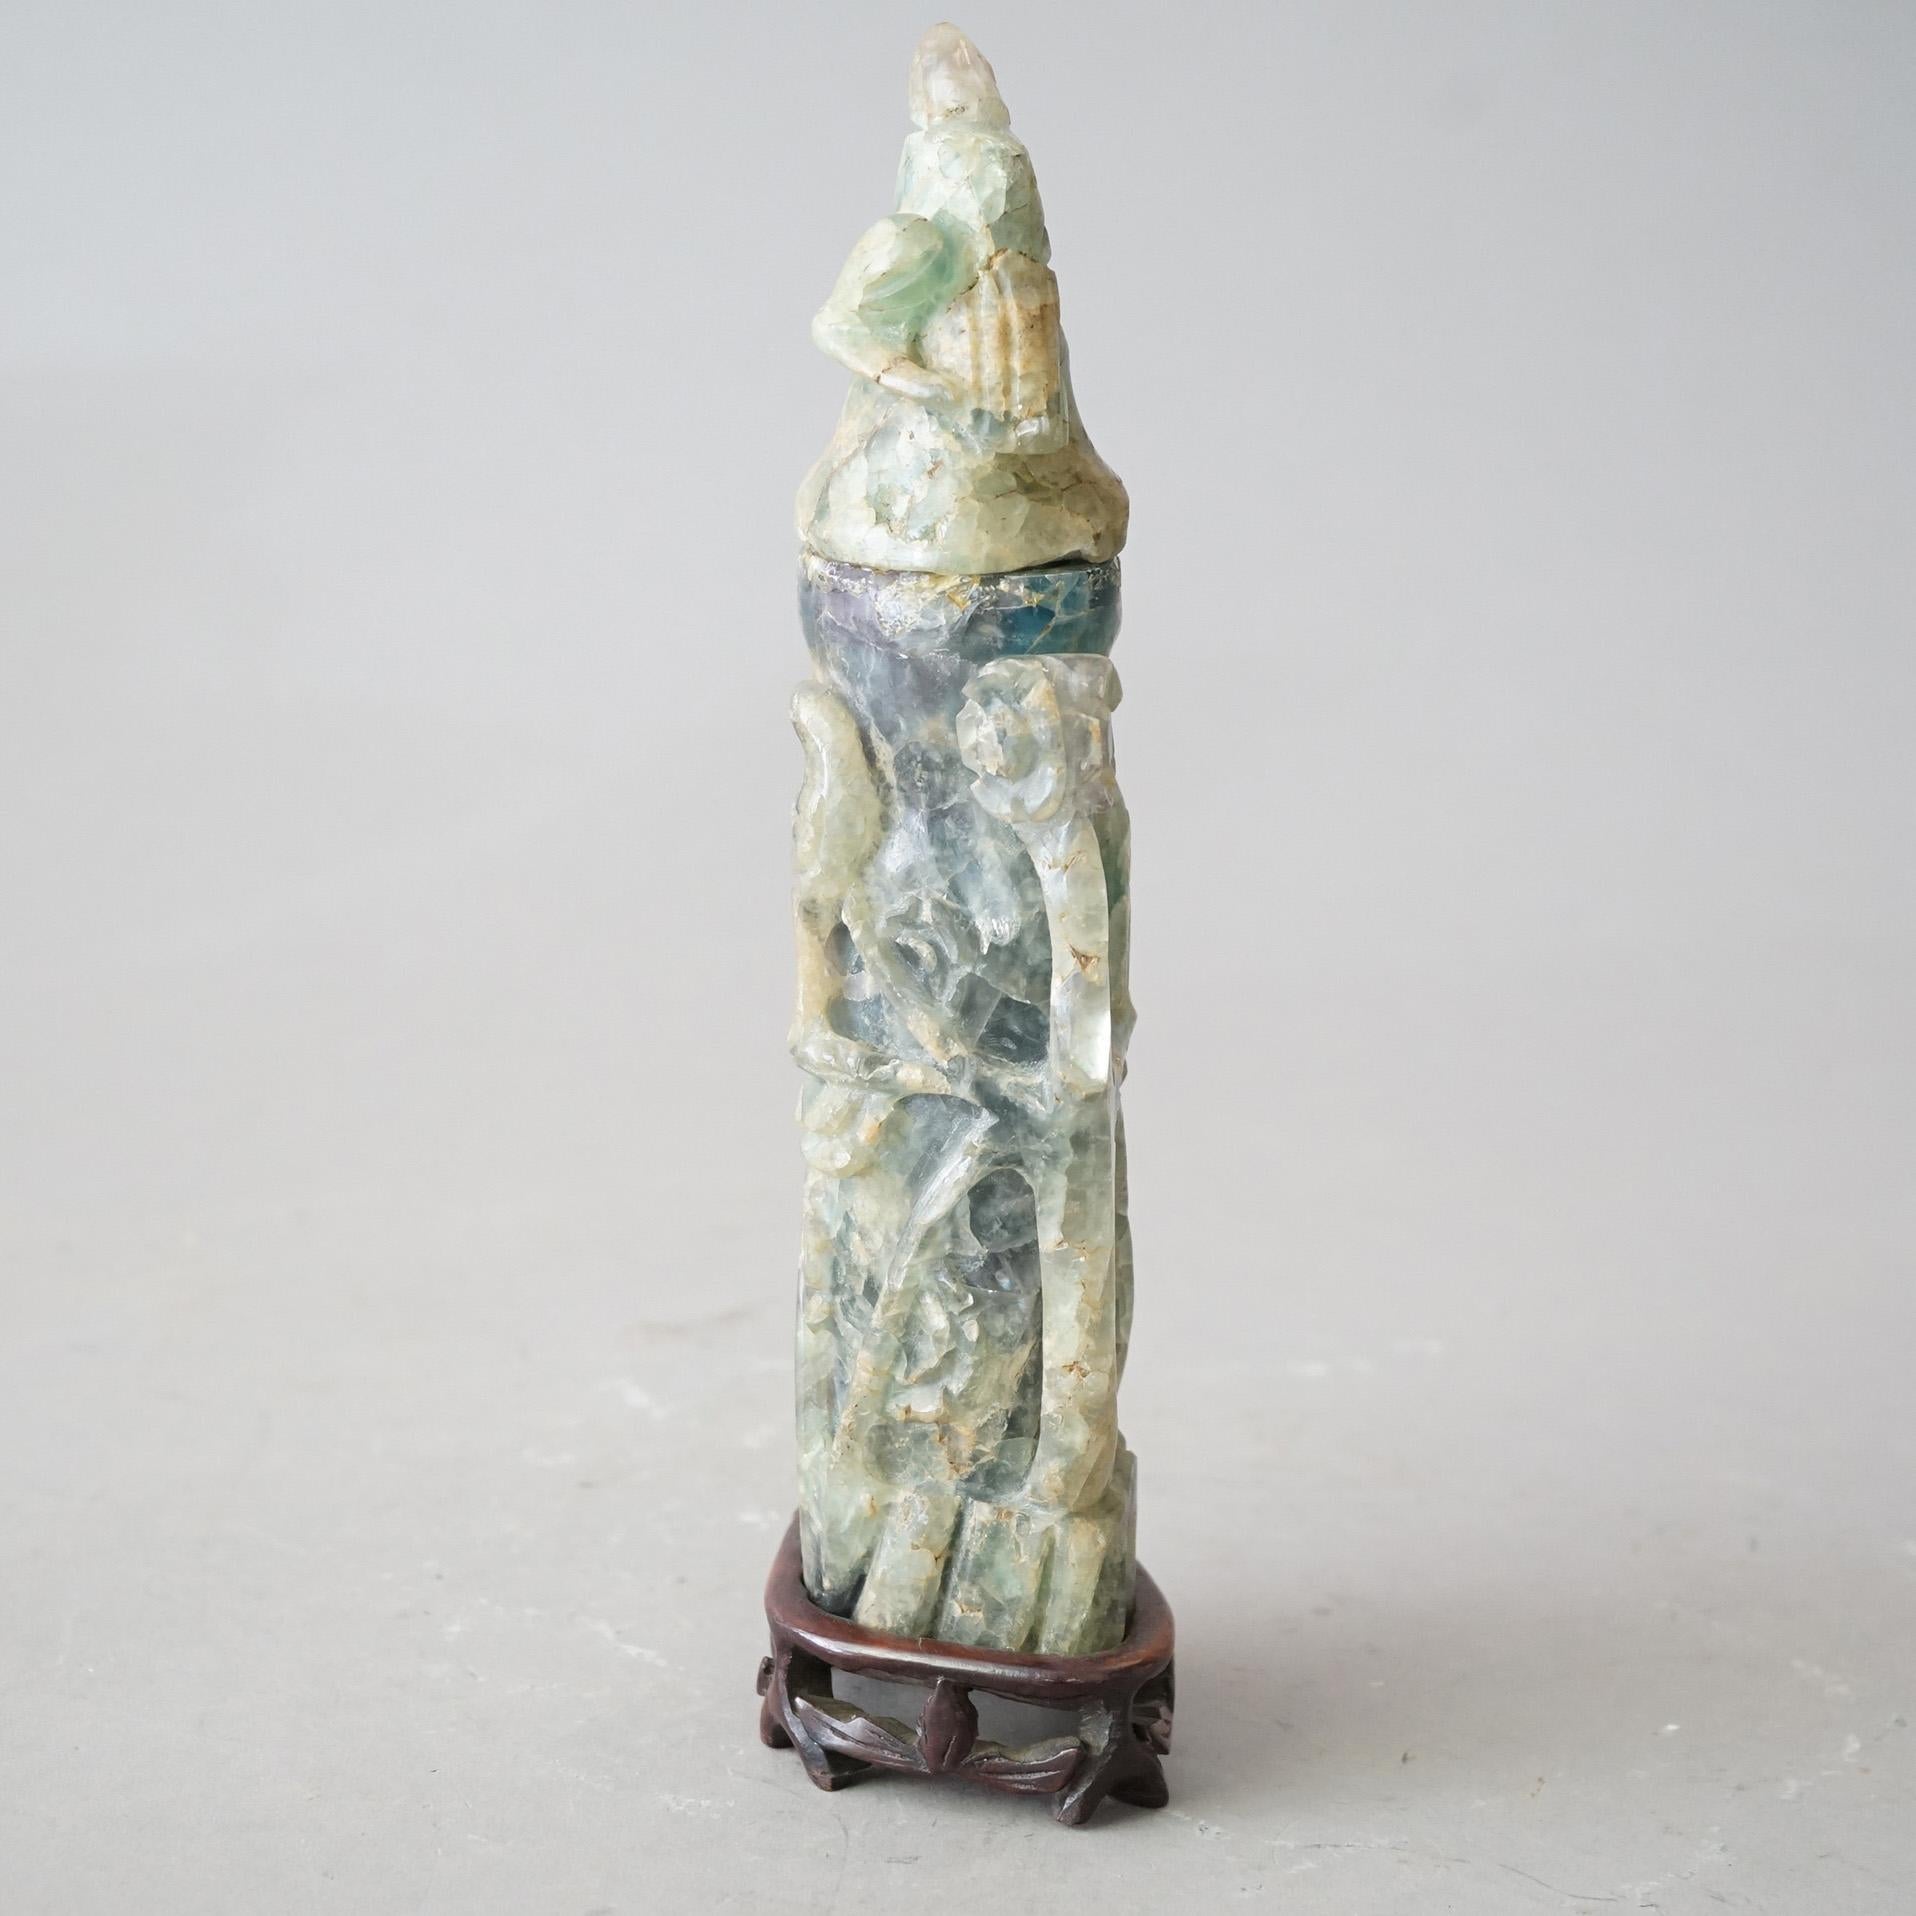 Sculpture asiatique ancienne en pierre de savon sculptée en jade avec des oiseaux C1890

Dimensions - 11,5 